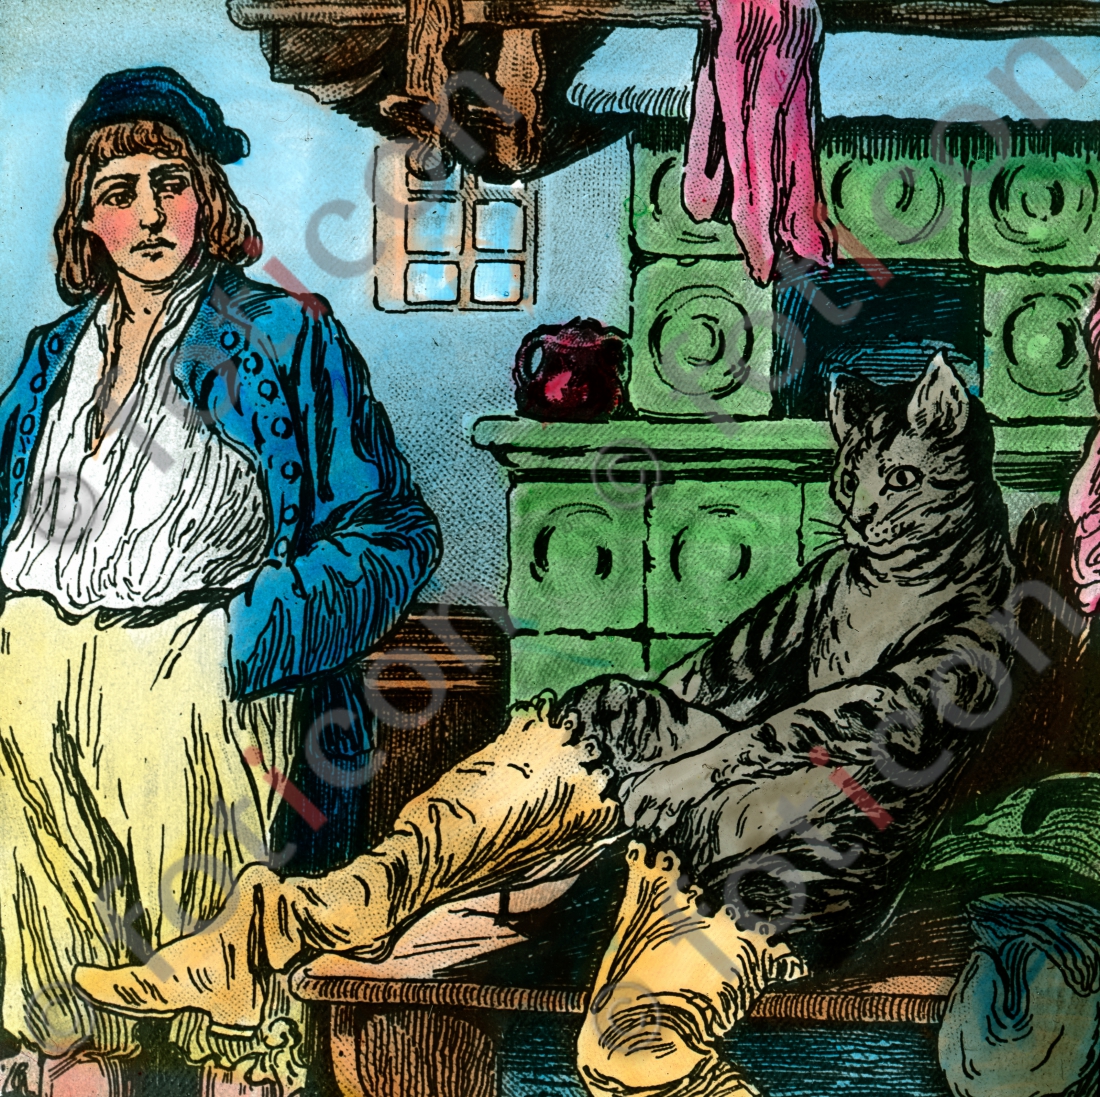 Der Kater zieht sich die Stiefel an | The cat pulls the boots - Foto foticon-simon-166b-001.jpg | foticon.de - Bilddatenbank für Motive aus Geschichte und Kultur